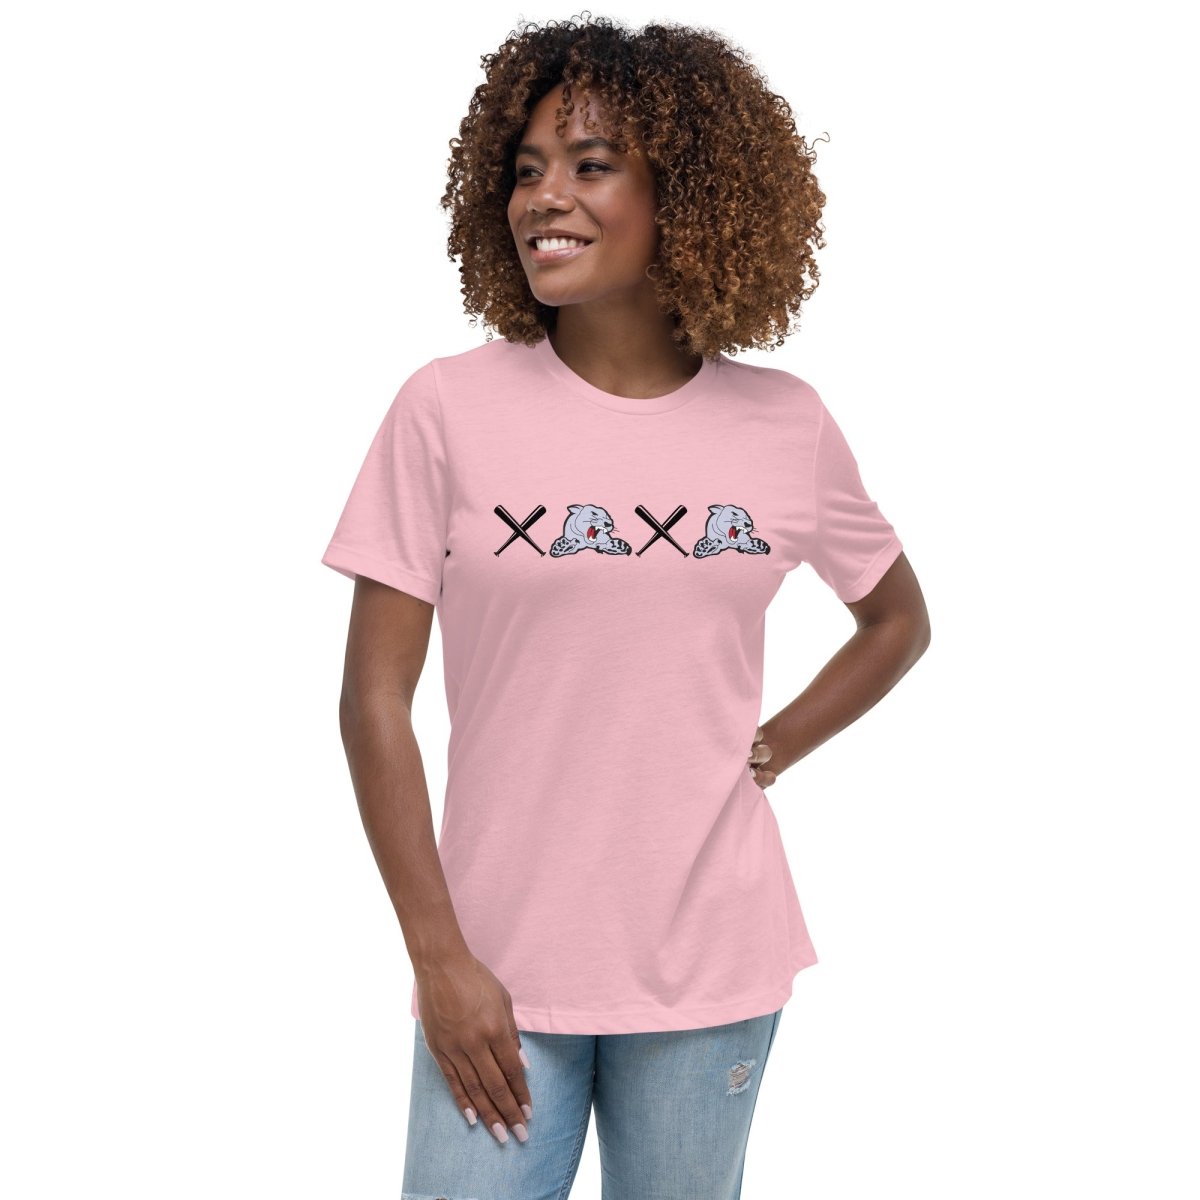 XOXO Women's Relaxed T-Shirt